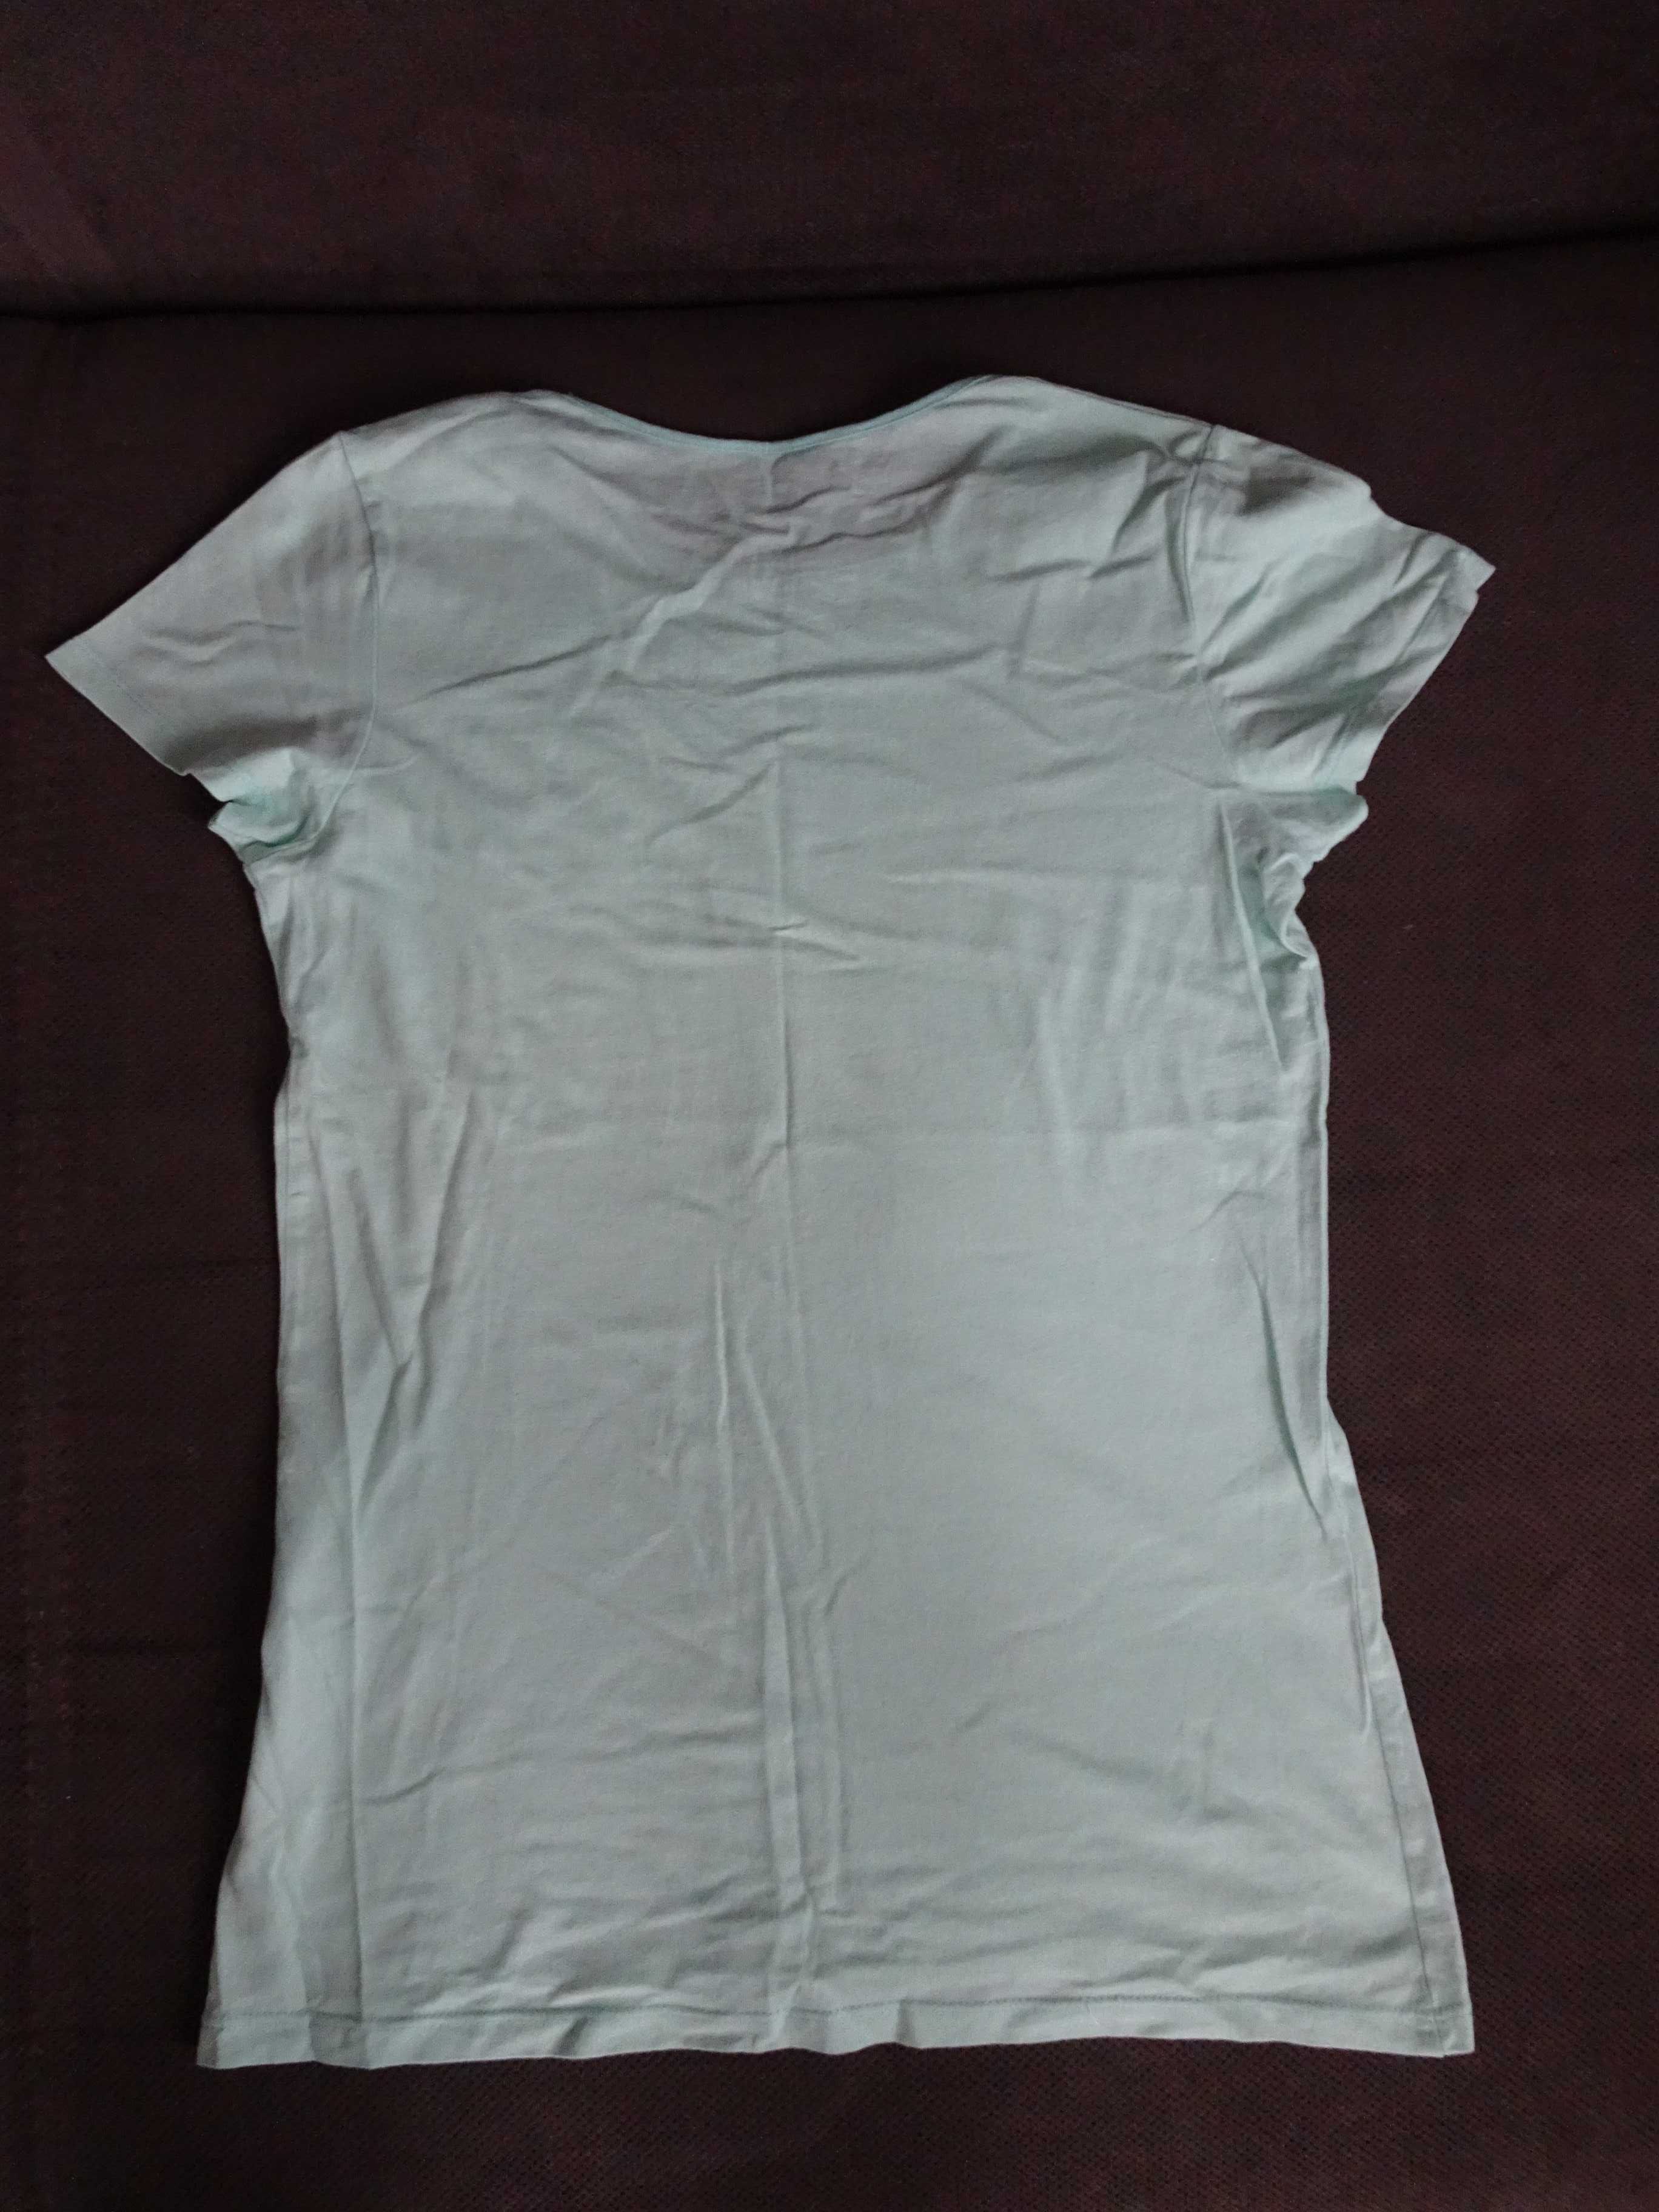 T-shirt/bluzka dziewczęca rozmiar 152-158 cm